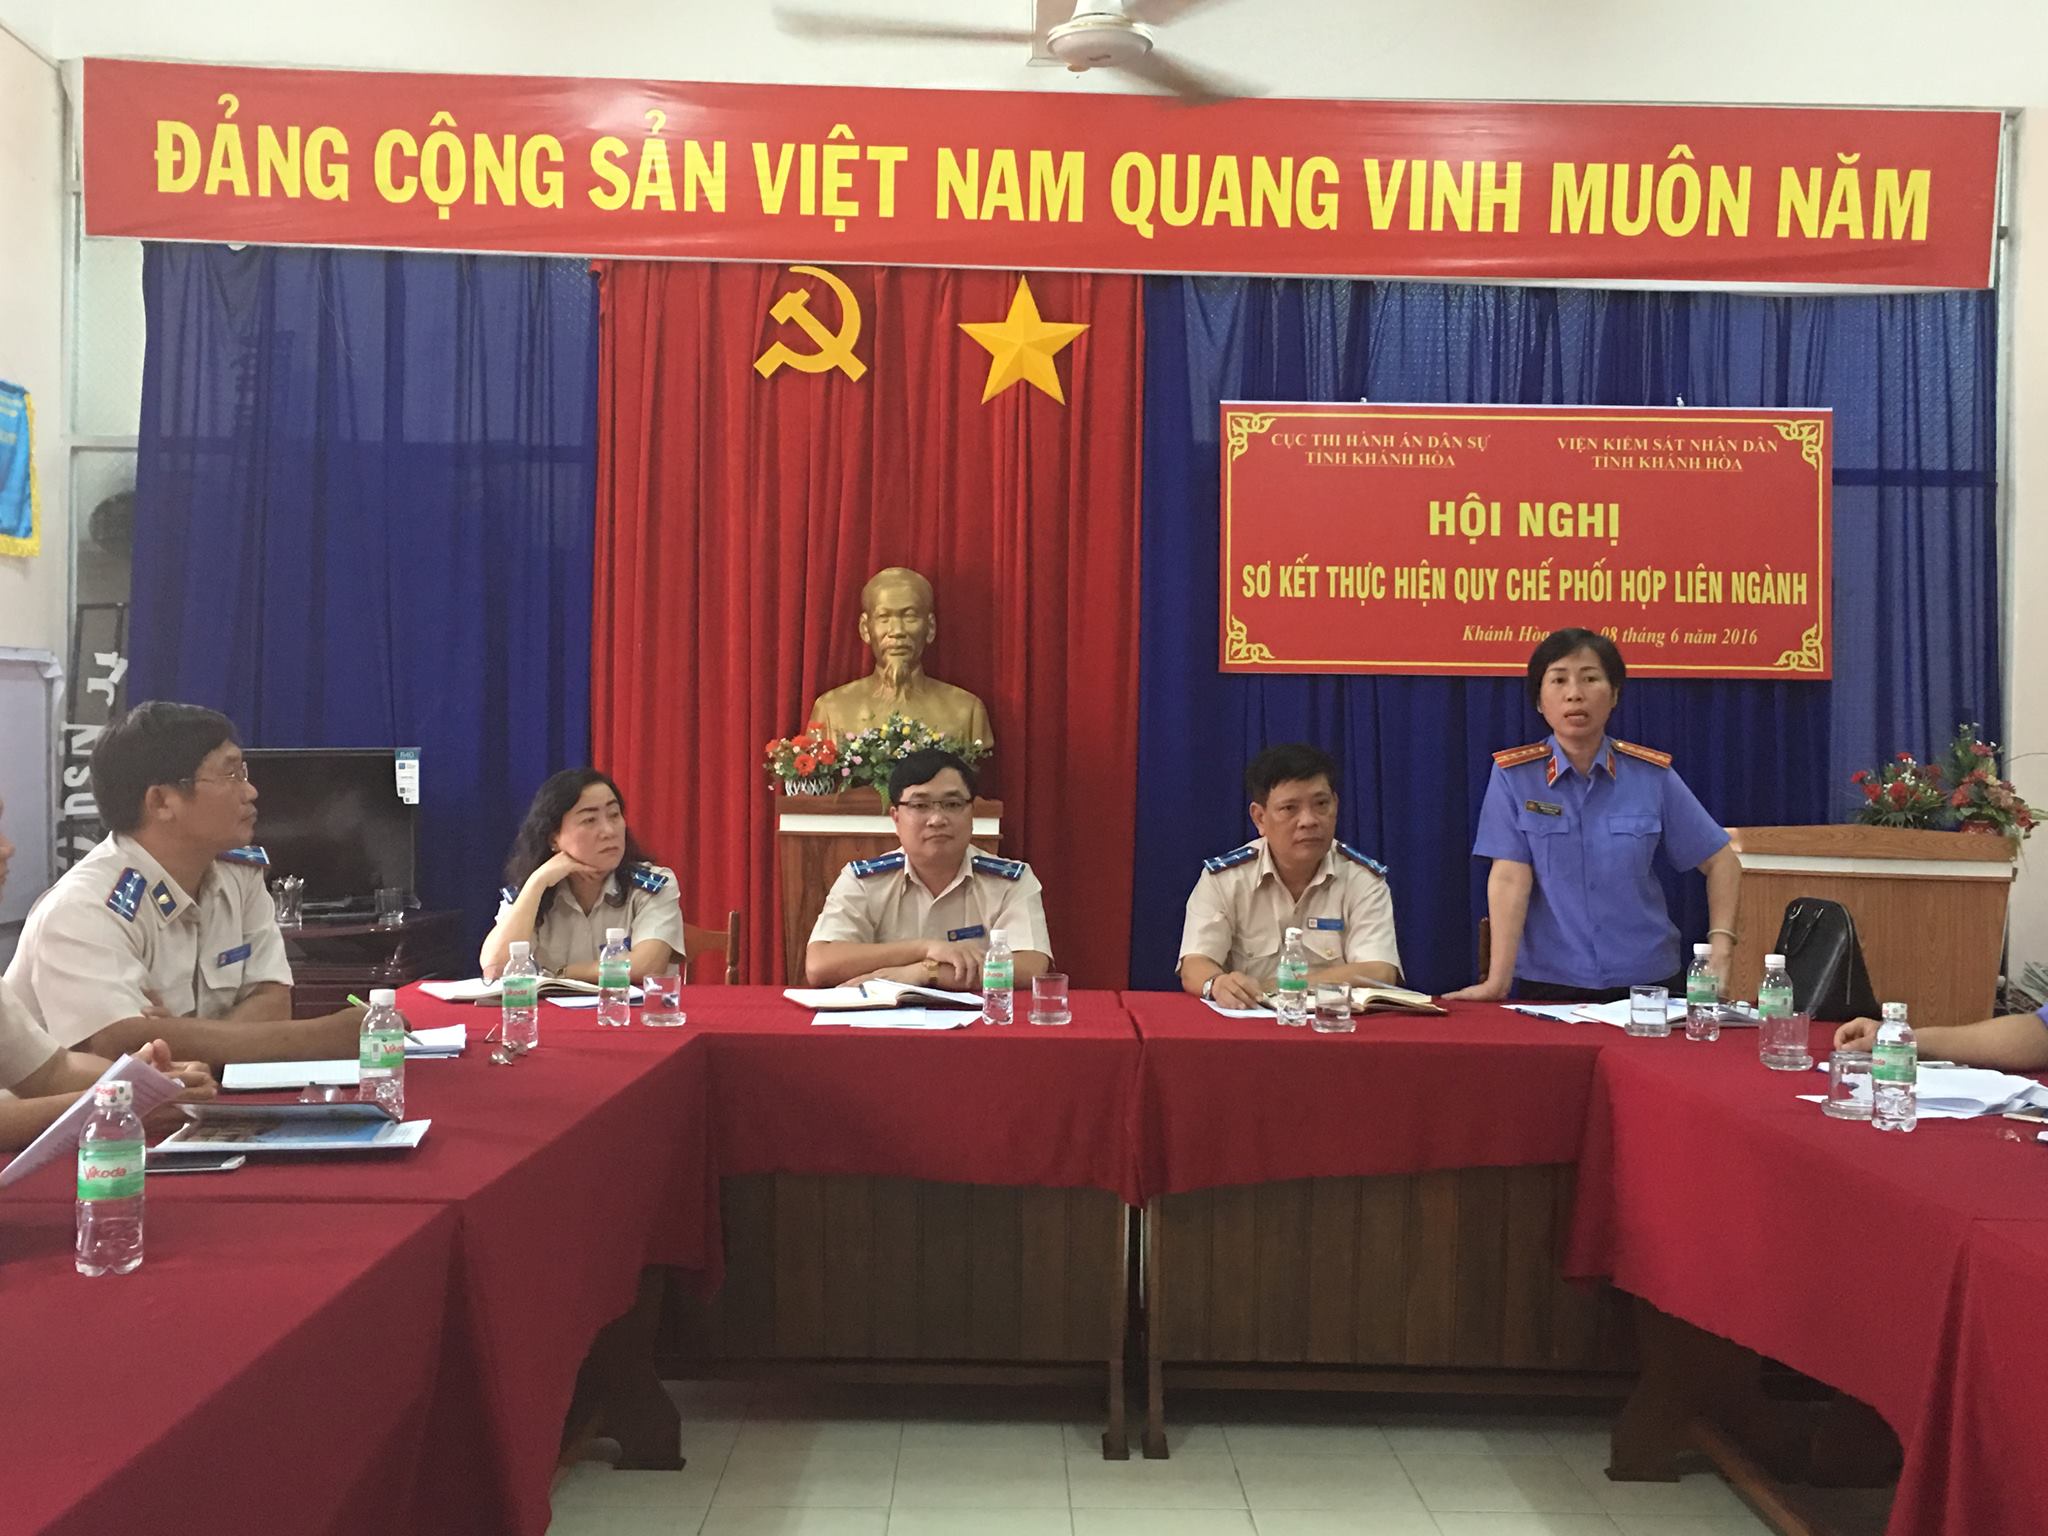 VKSND tỉnh Khánh Hòa tham gia Hội nghị sơ kết Quy chế phối hợp trong công tác thi hành án dân sự tại Cục THADS tỉnh Khánh Hòa